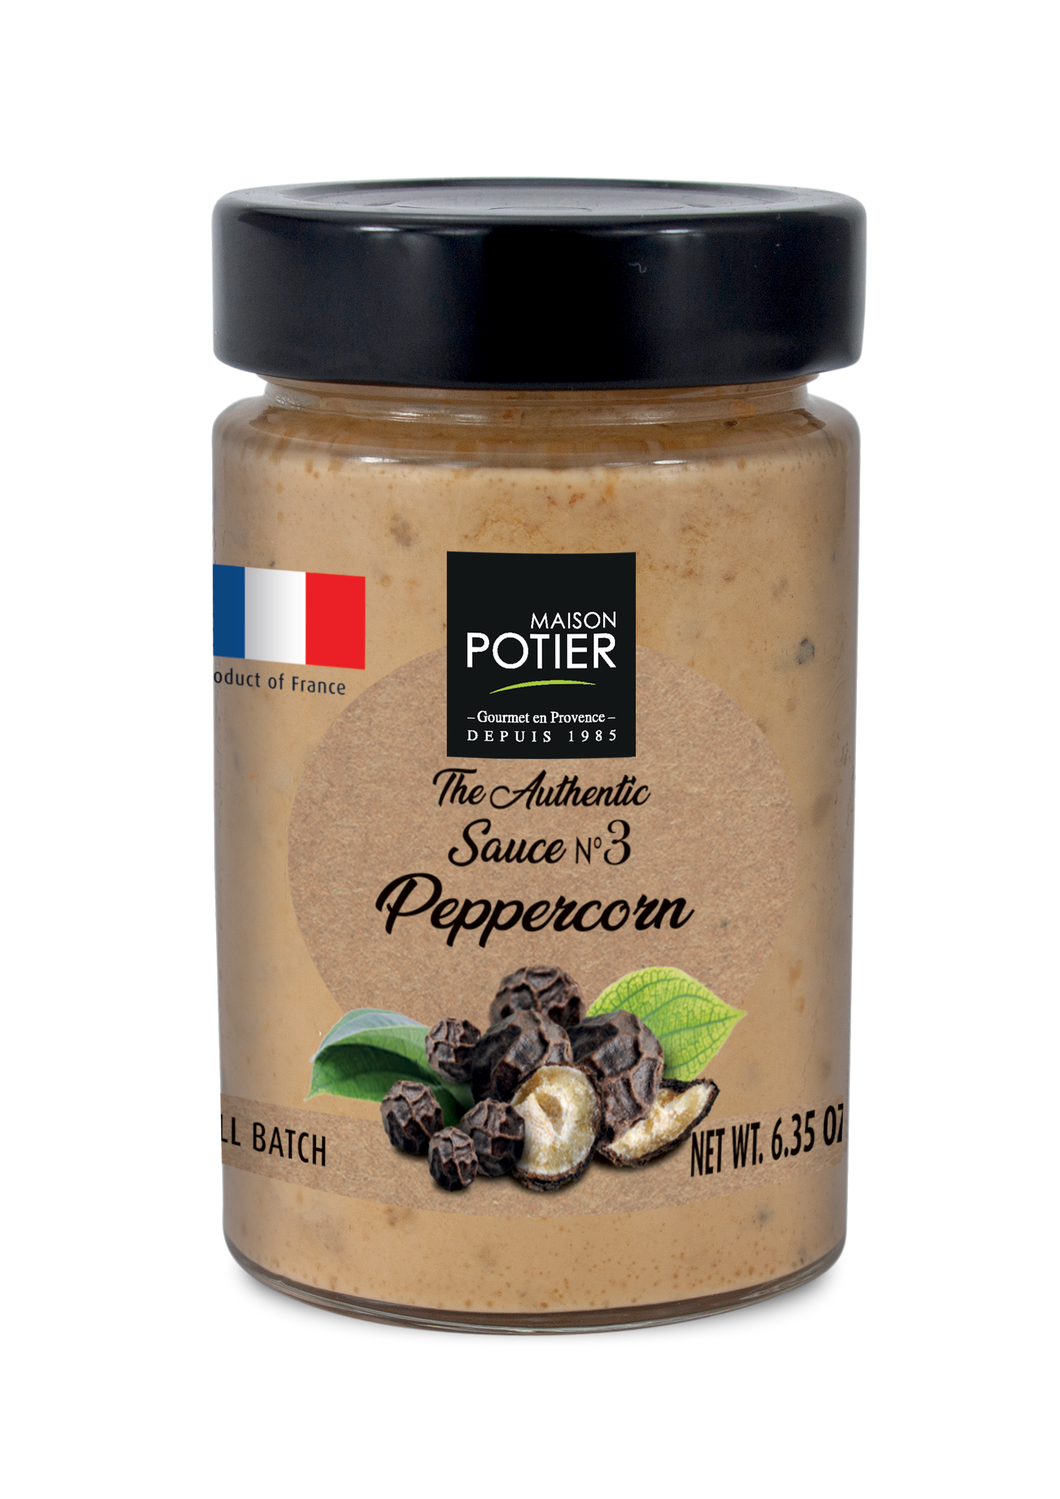 Maison Potier Peppercorn Sauce, The Authentic Sauce N. 3, 6.35oz Jar - International Loft